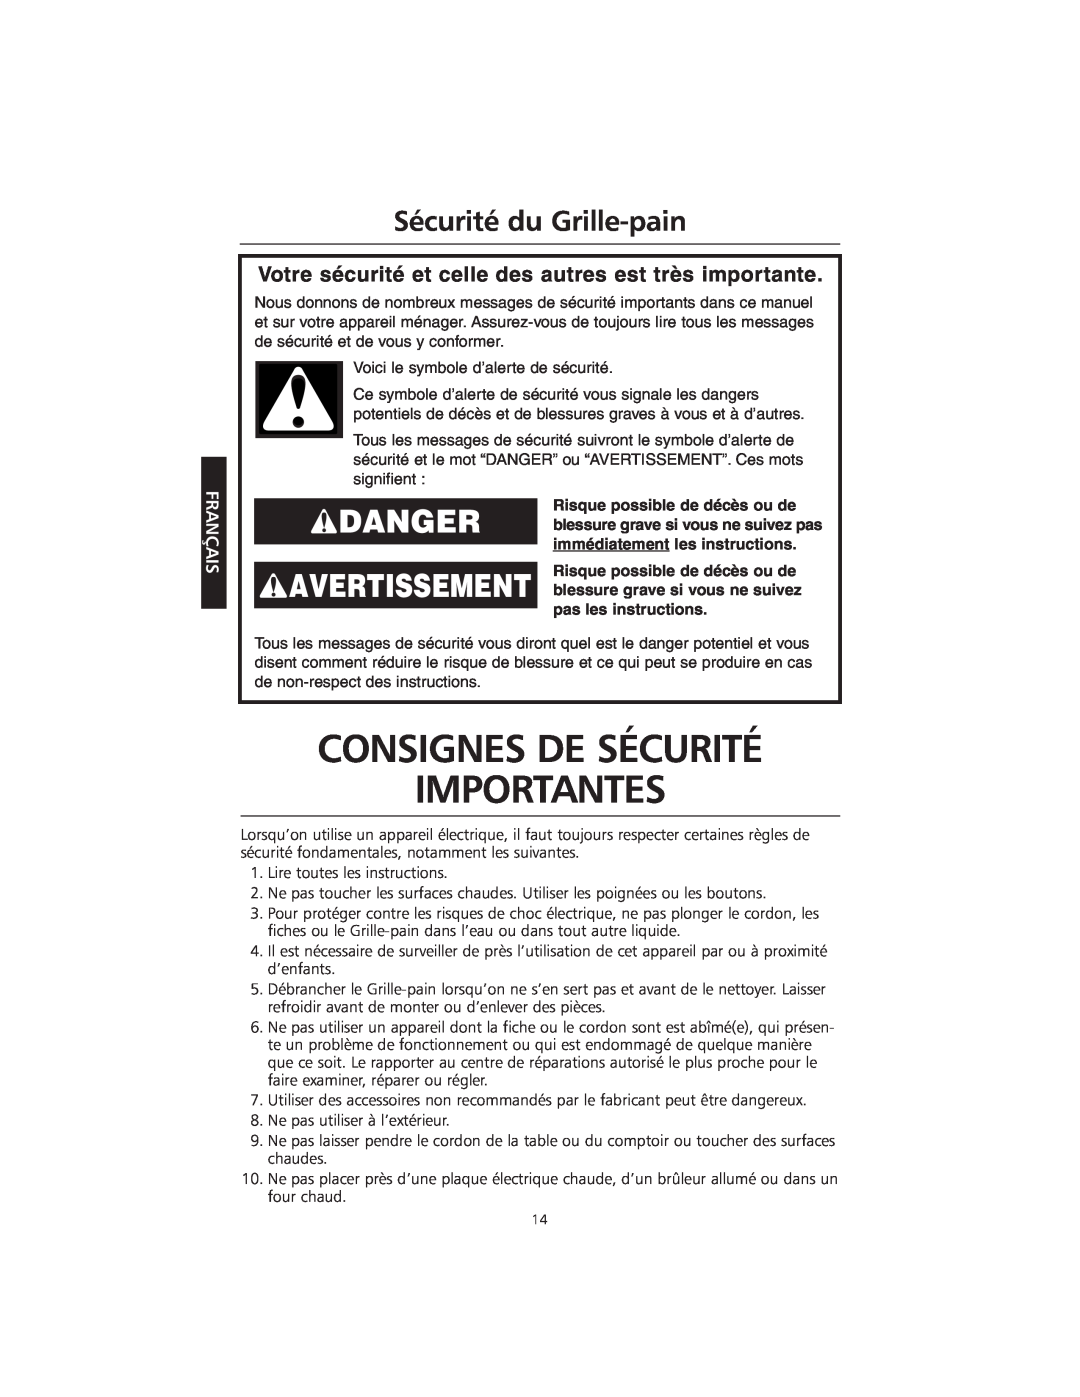 KitchenAid KMTT400 Consignes De Sécurité Importantes, Sécurité du Grille-pain, Risque possible de décès ou de, Français 